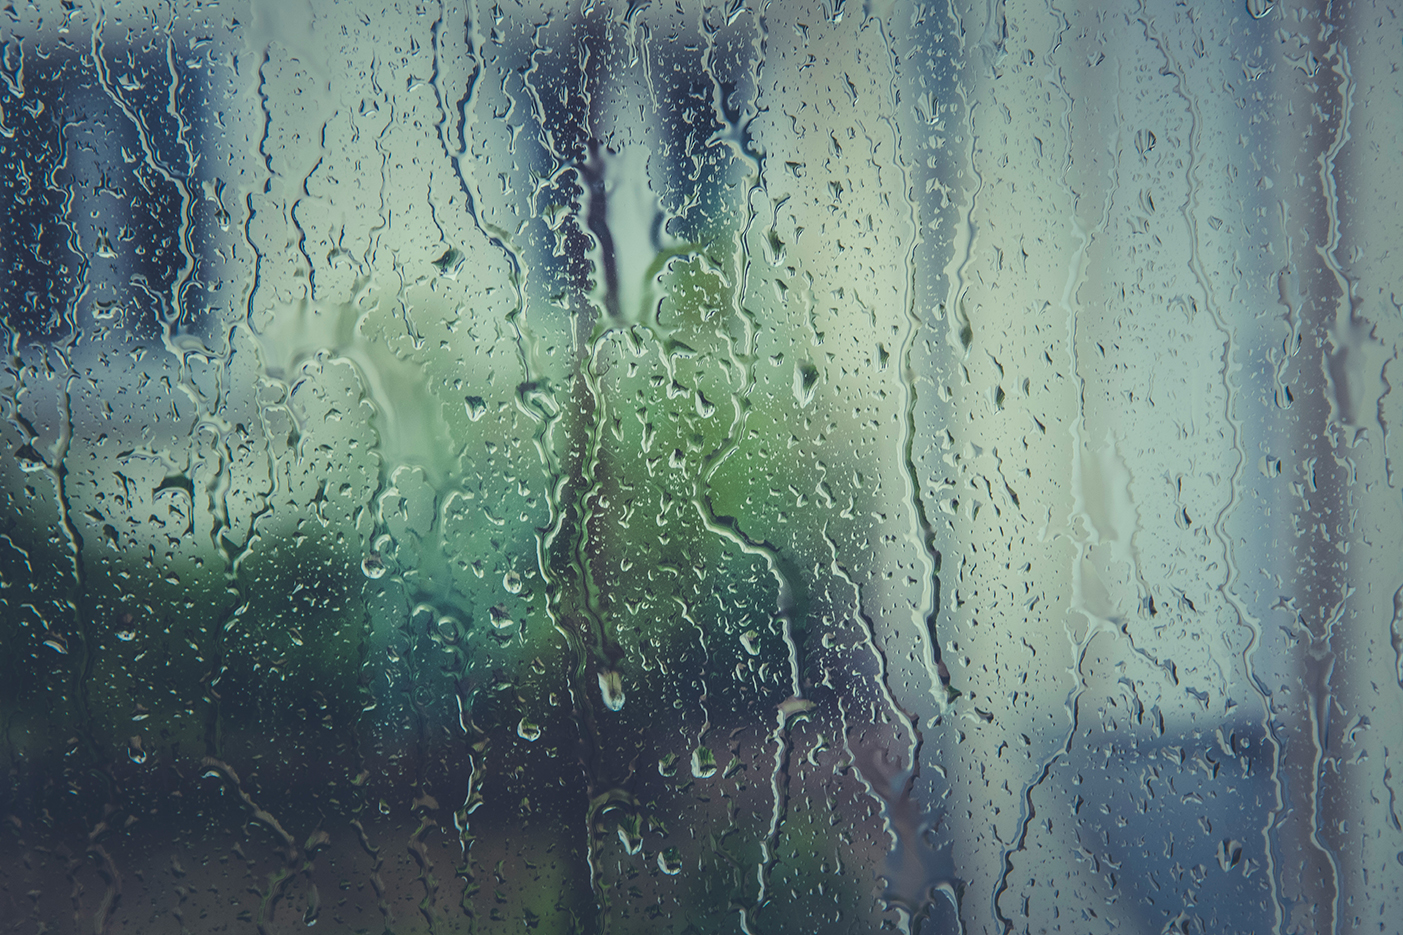 UItzicht naar buiten door met regendruppels beslagen raam